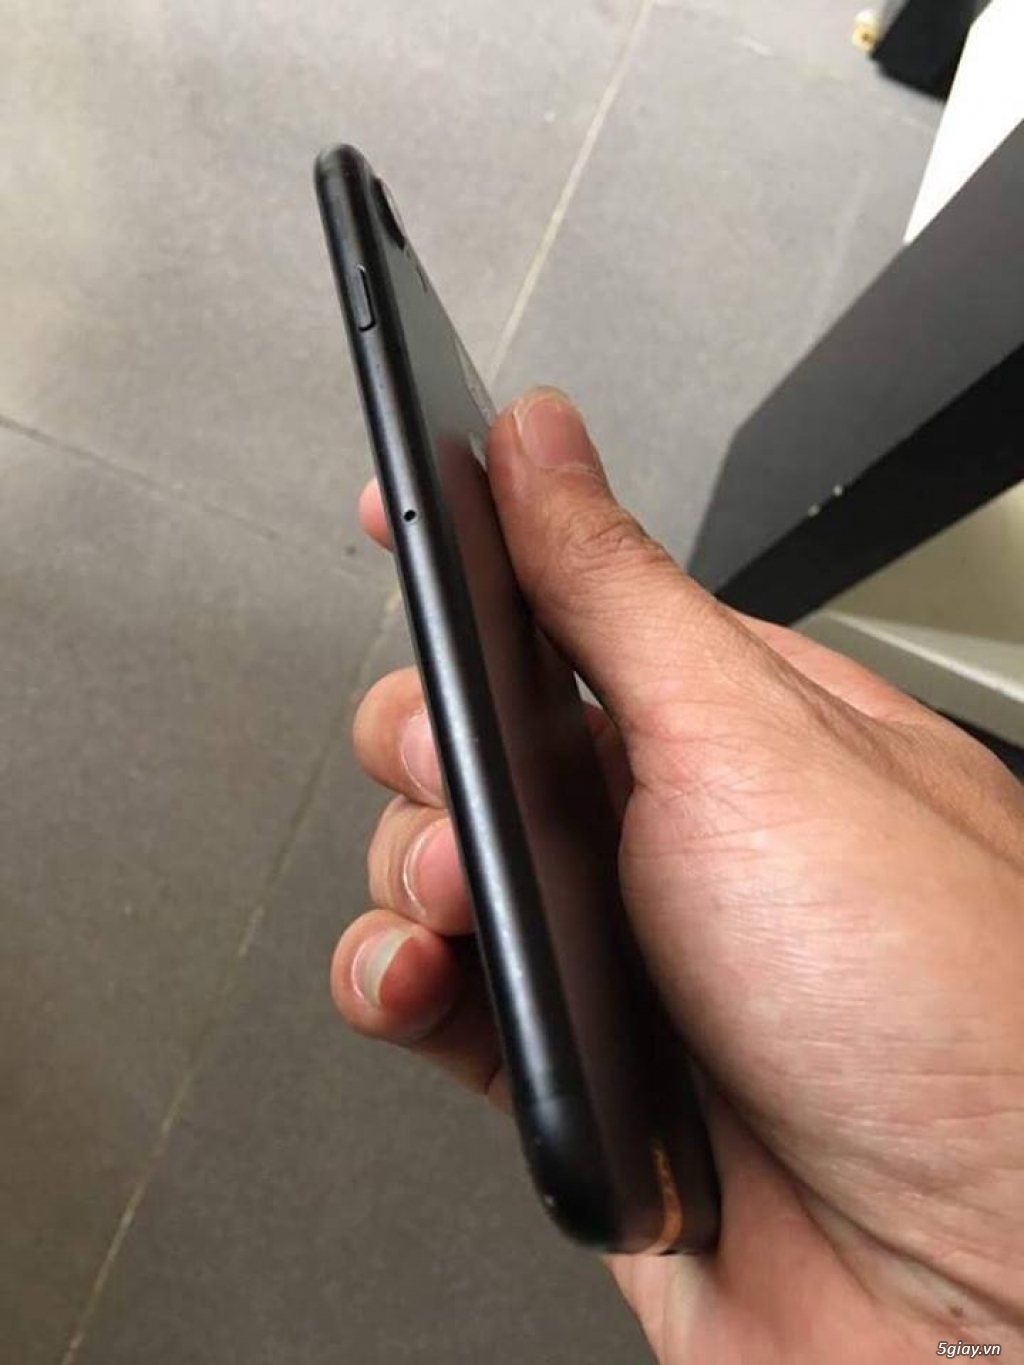 Bán iphone 7plus đen nhám zin keng tại hcm - 3